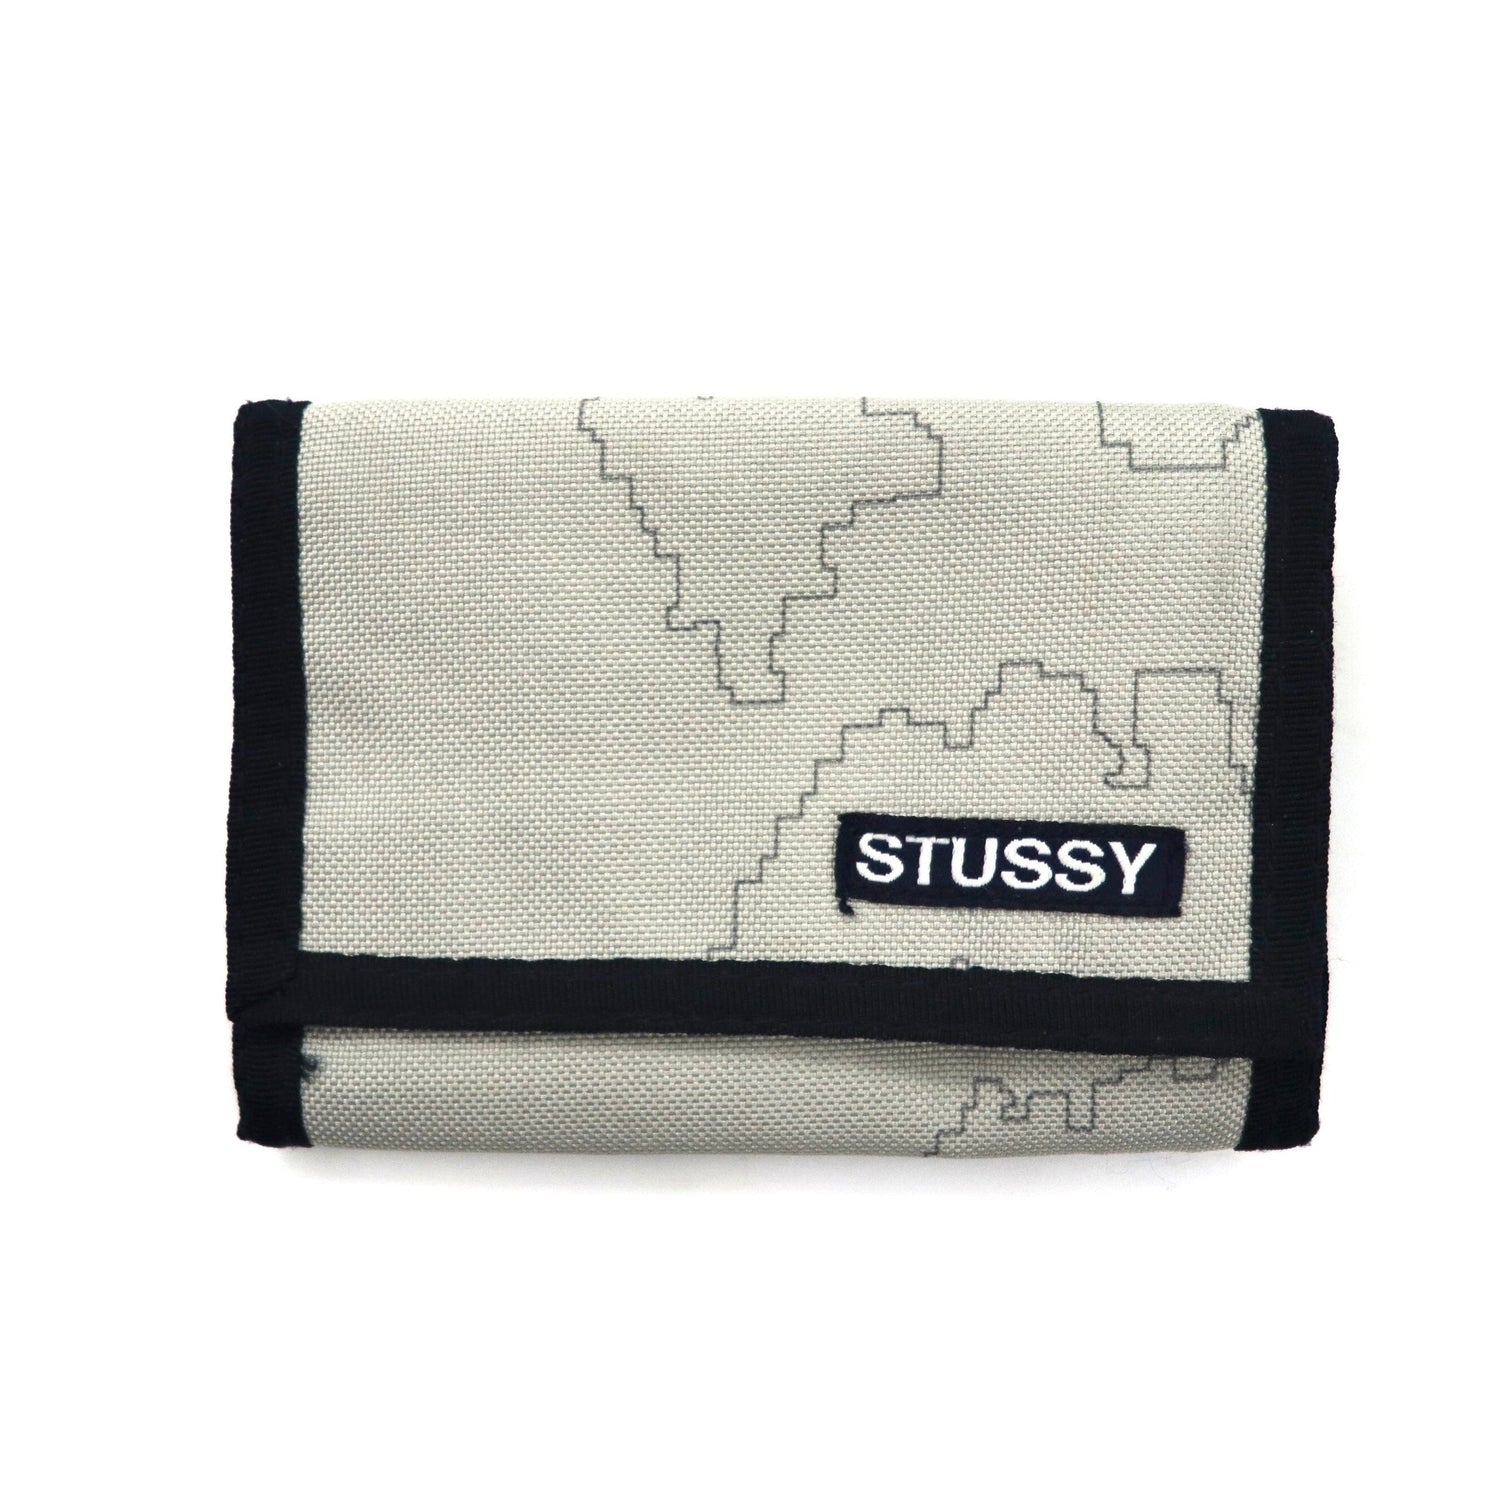 付録》 STUSSY（ステューシー）ロゴ刺繍入りウォレット 財布 通販